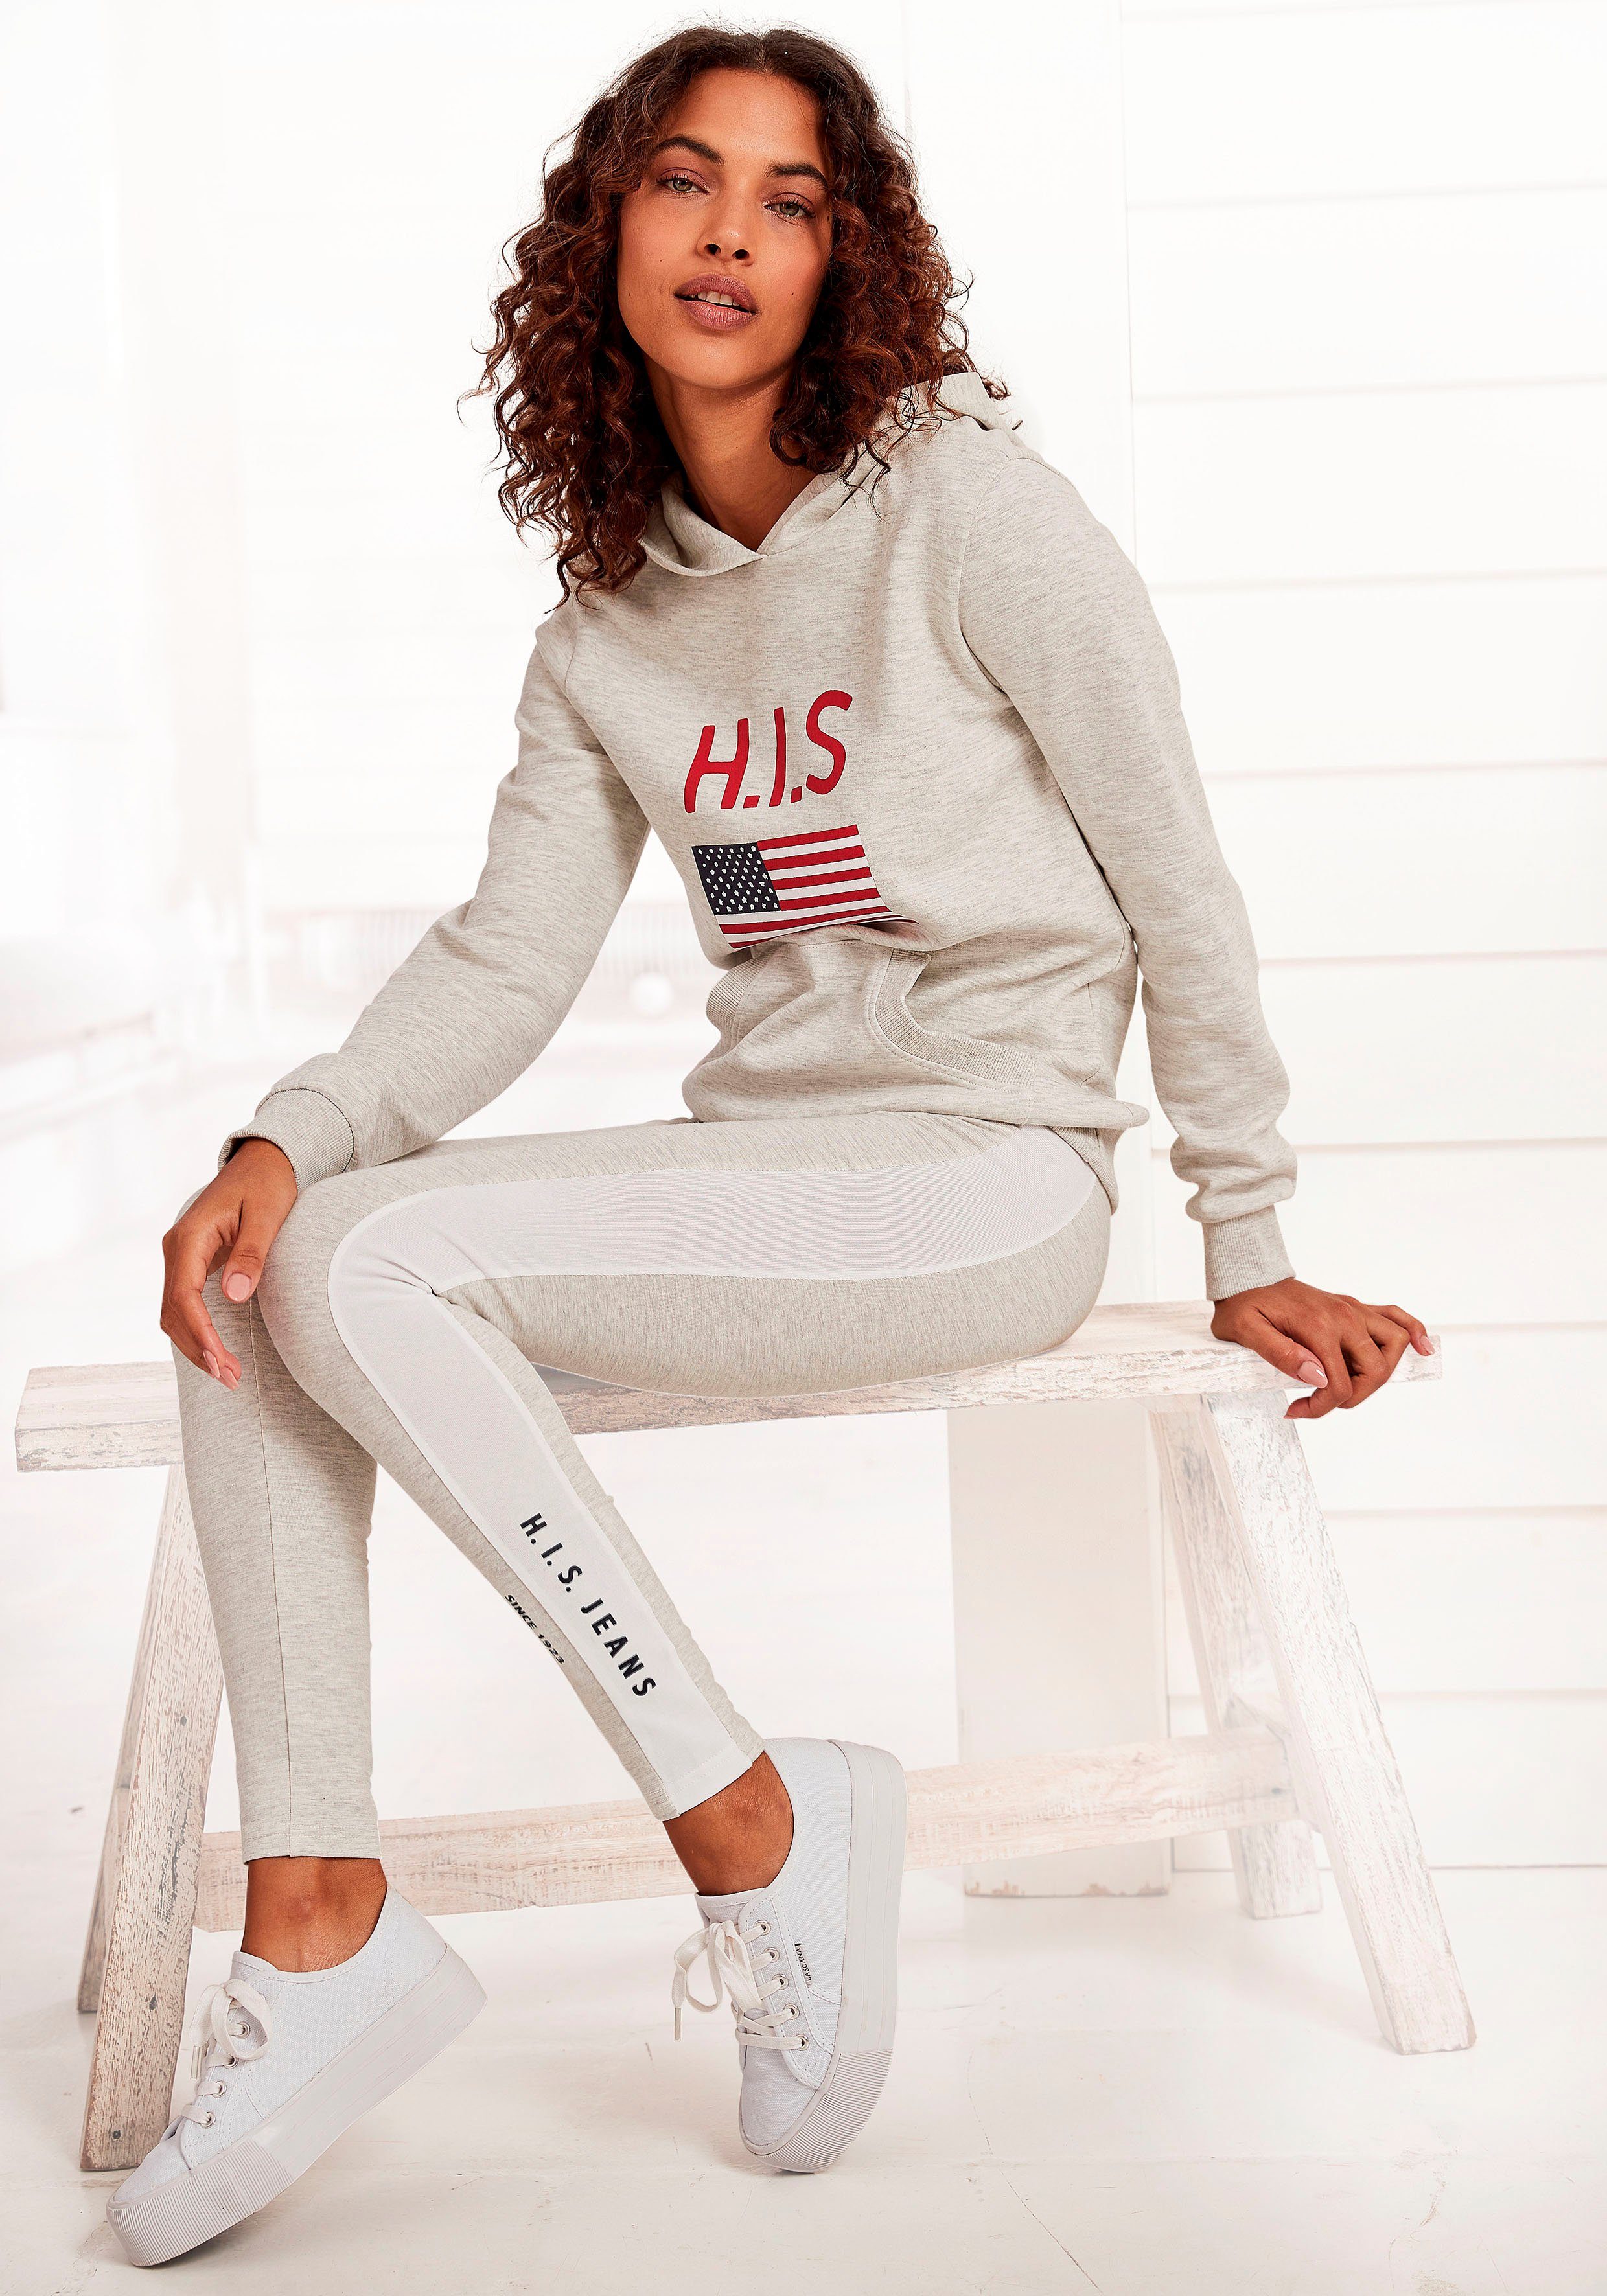 H.I.S Kapuzensweatshirt mit Logodruck und Kängurutasche, Loungeanzug, Hoodie grau-meliert